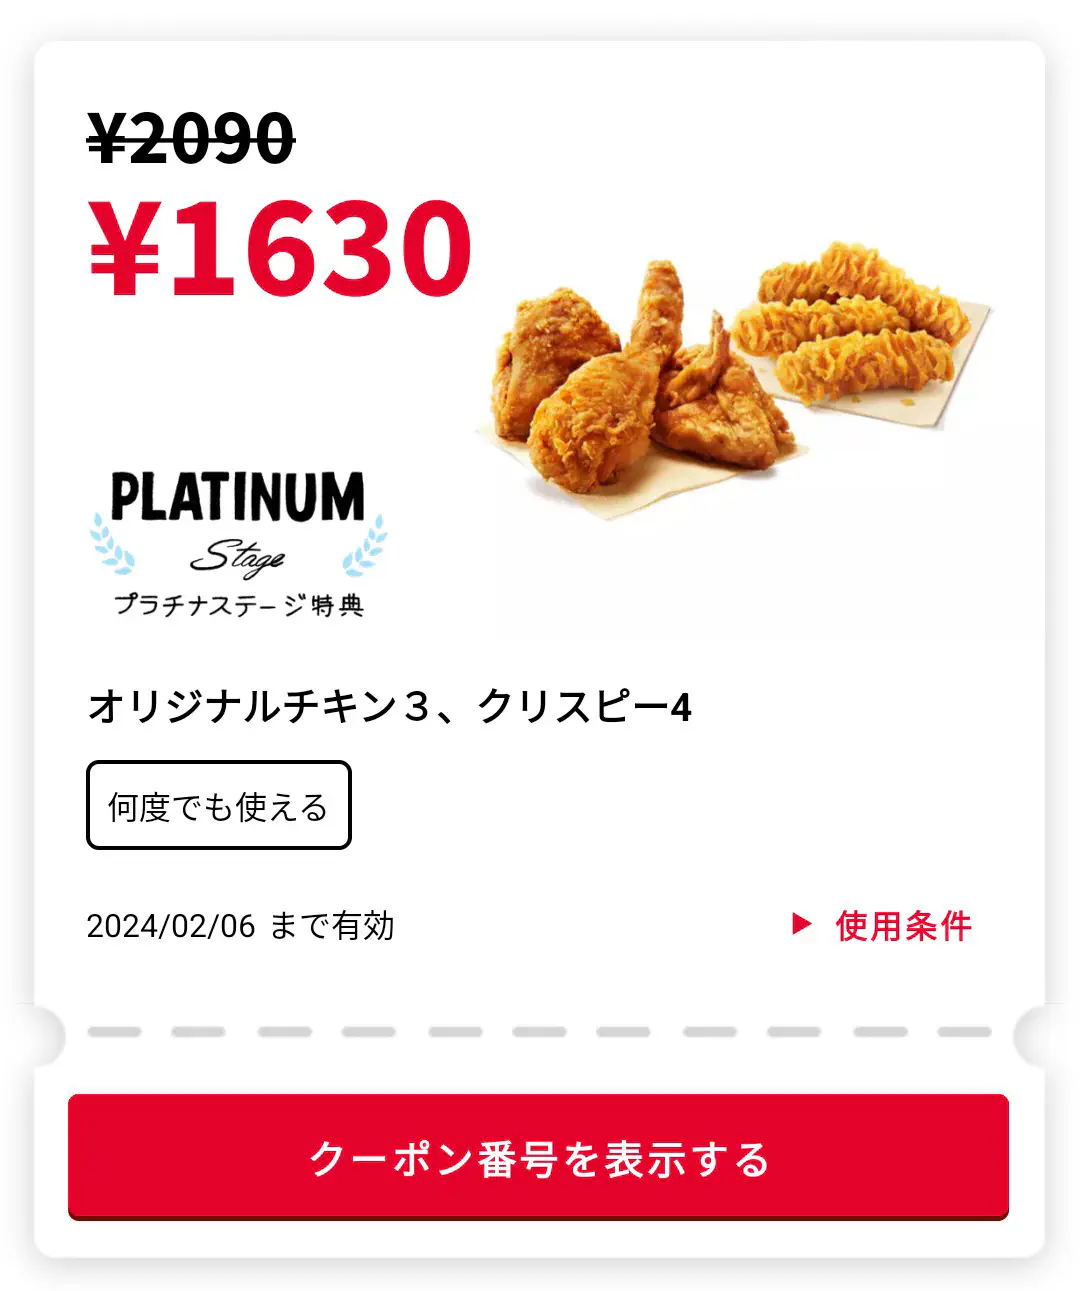 2024/01/08：吮指原味鸡x3 + 松脆鸡肉x4 = 1630 日元